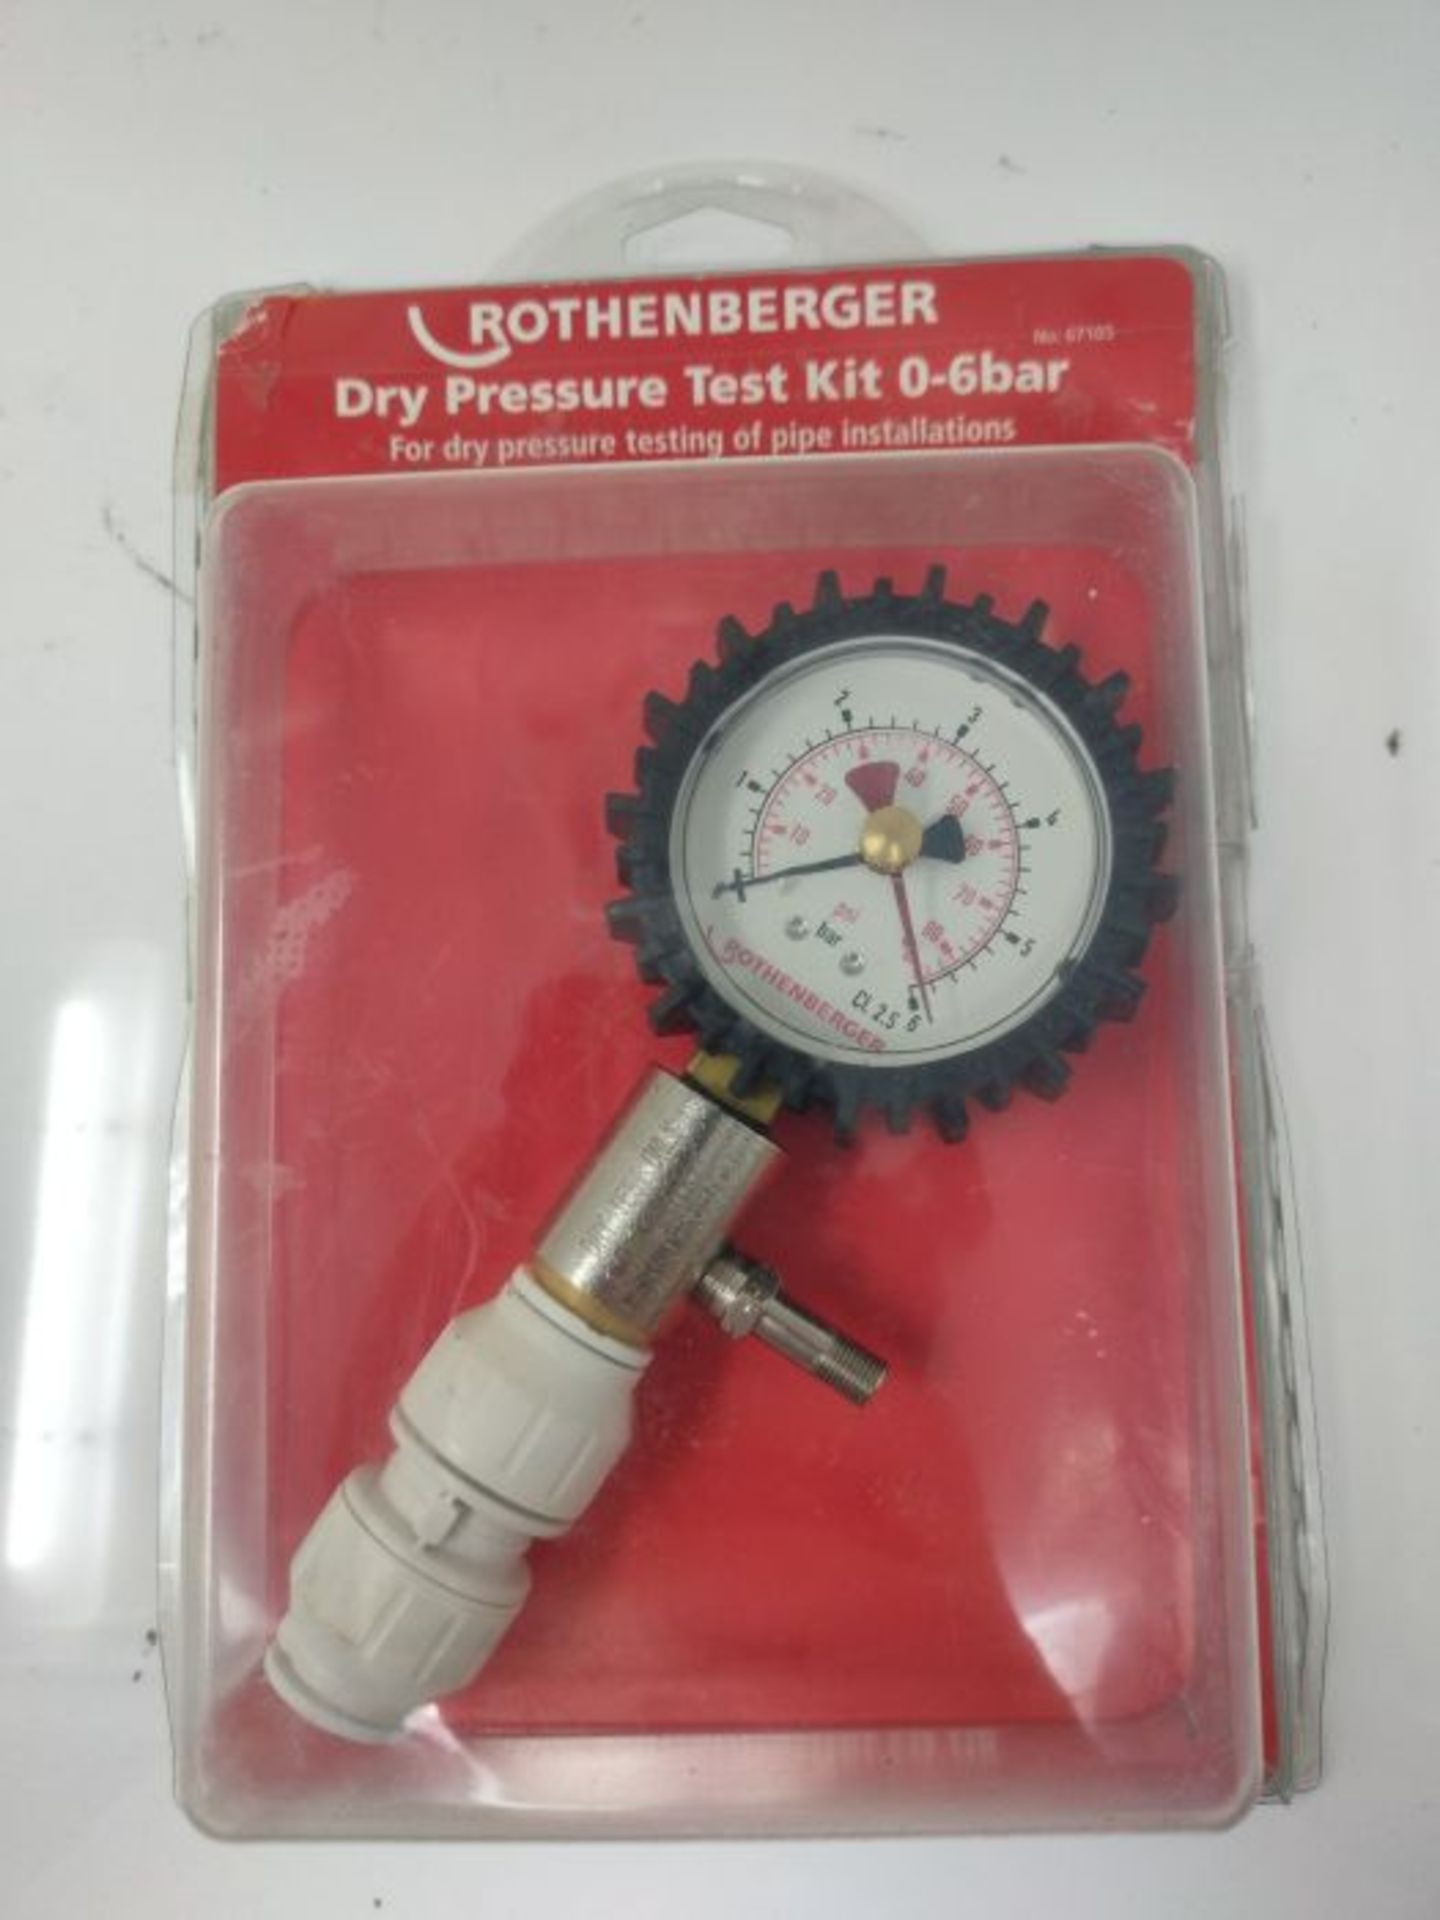 Rothenberger 67105 Dry Pressure Test Kit (0-6 BAR) - Image 3 of 3